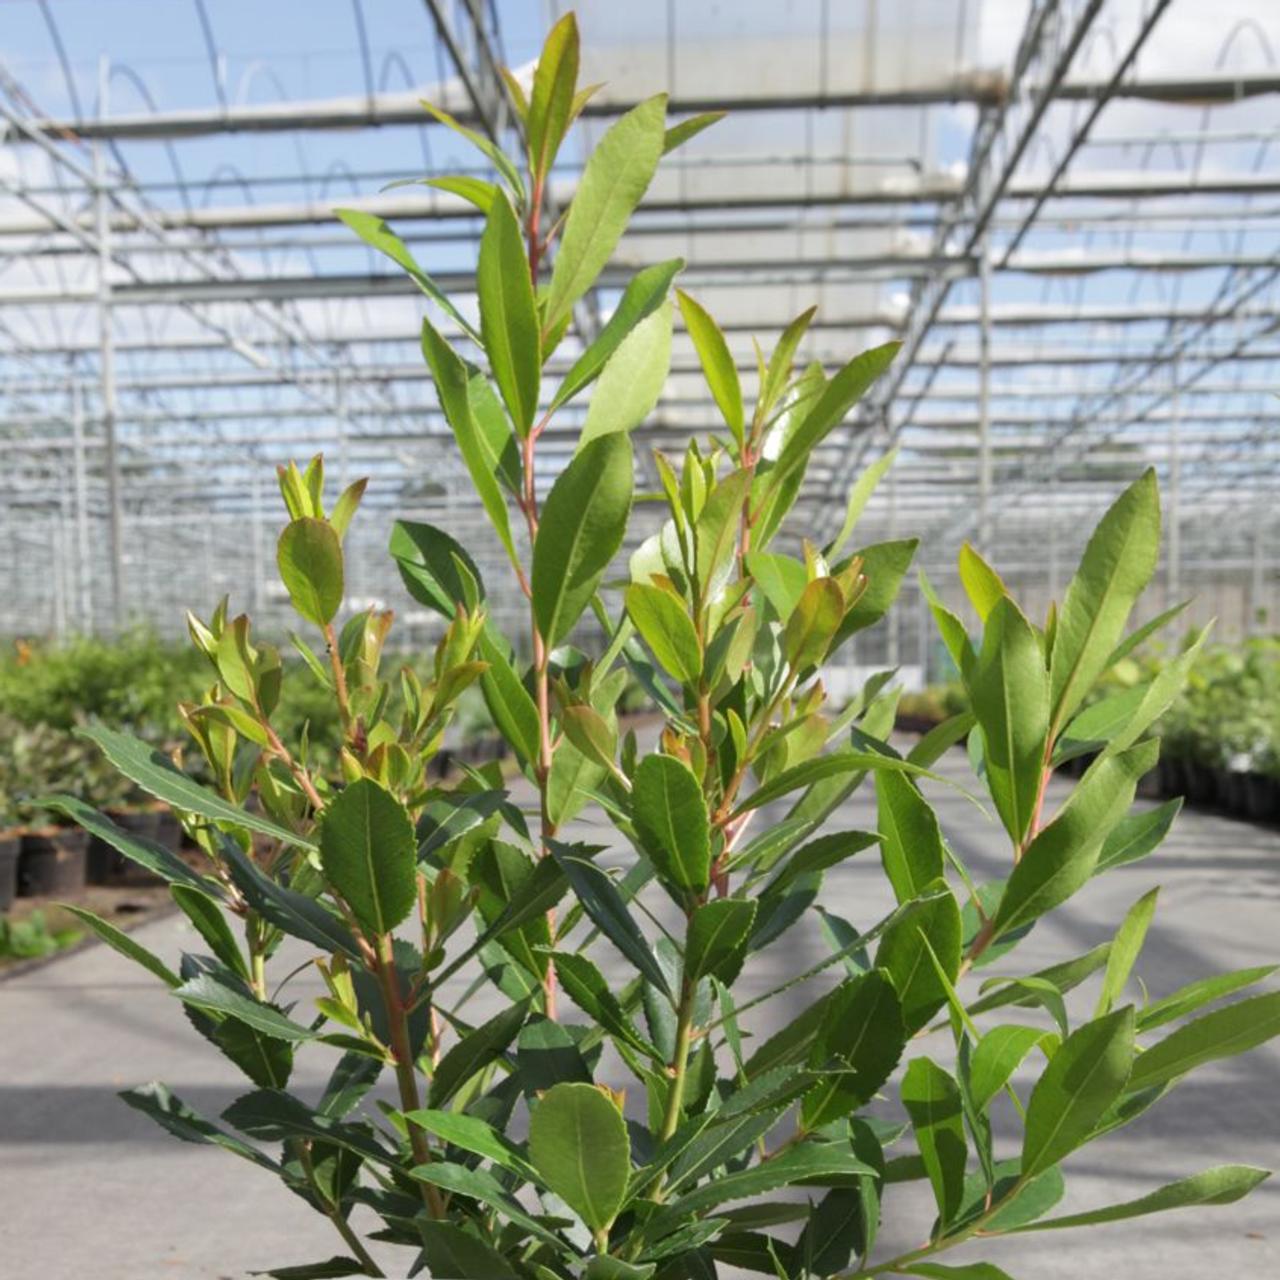 arbutus unedo 'rubra' - kaufen sie pflanzen bei coolplants